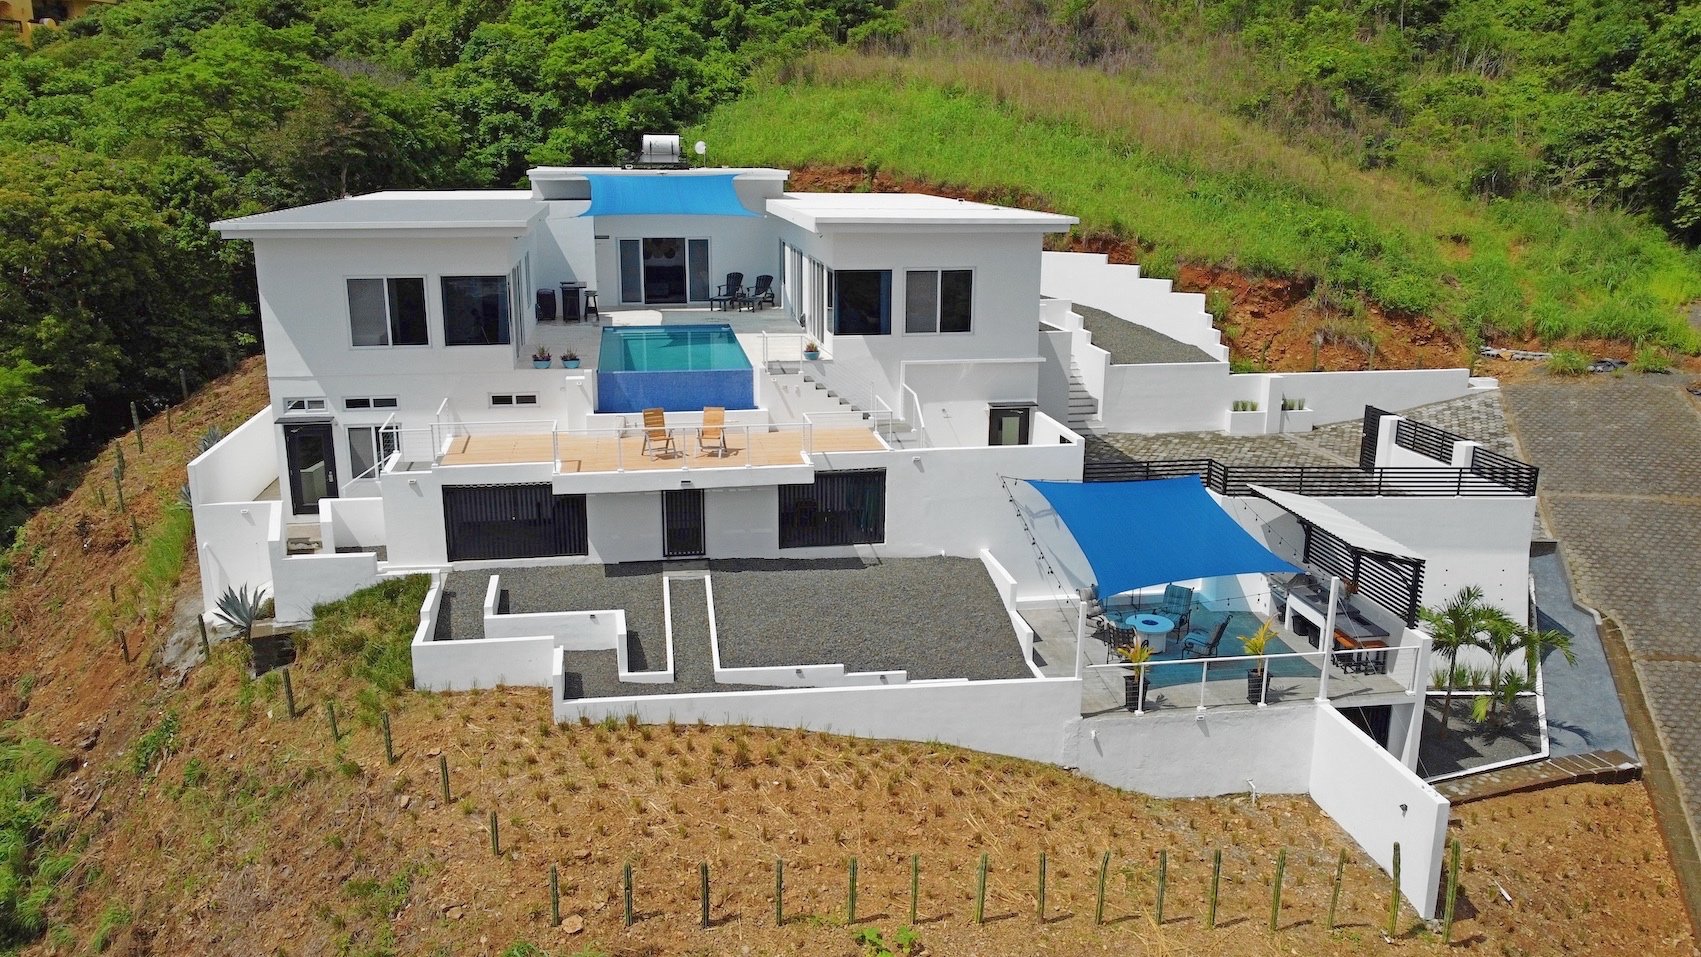 Home For Sale San Juan Del Sur Nicaragua Real Estate 1.jpg